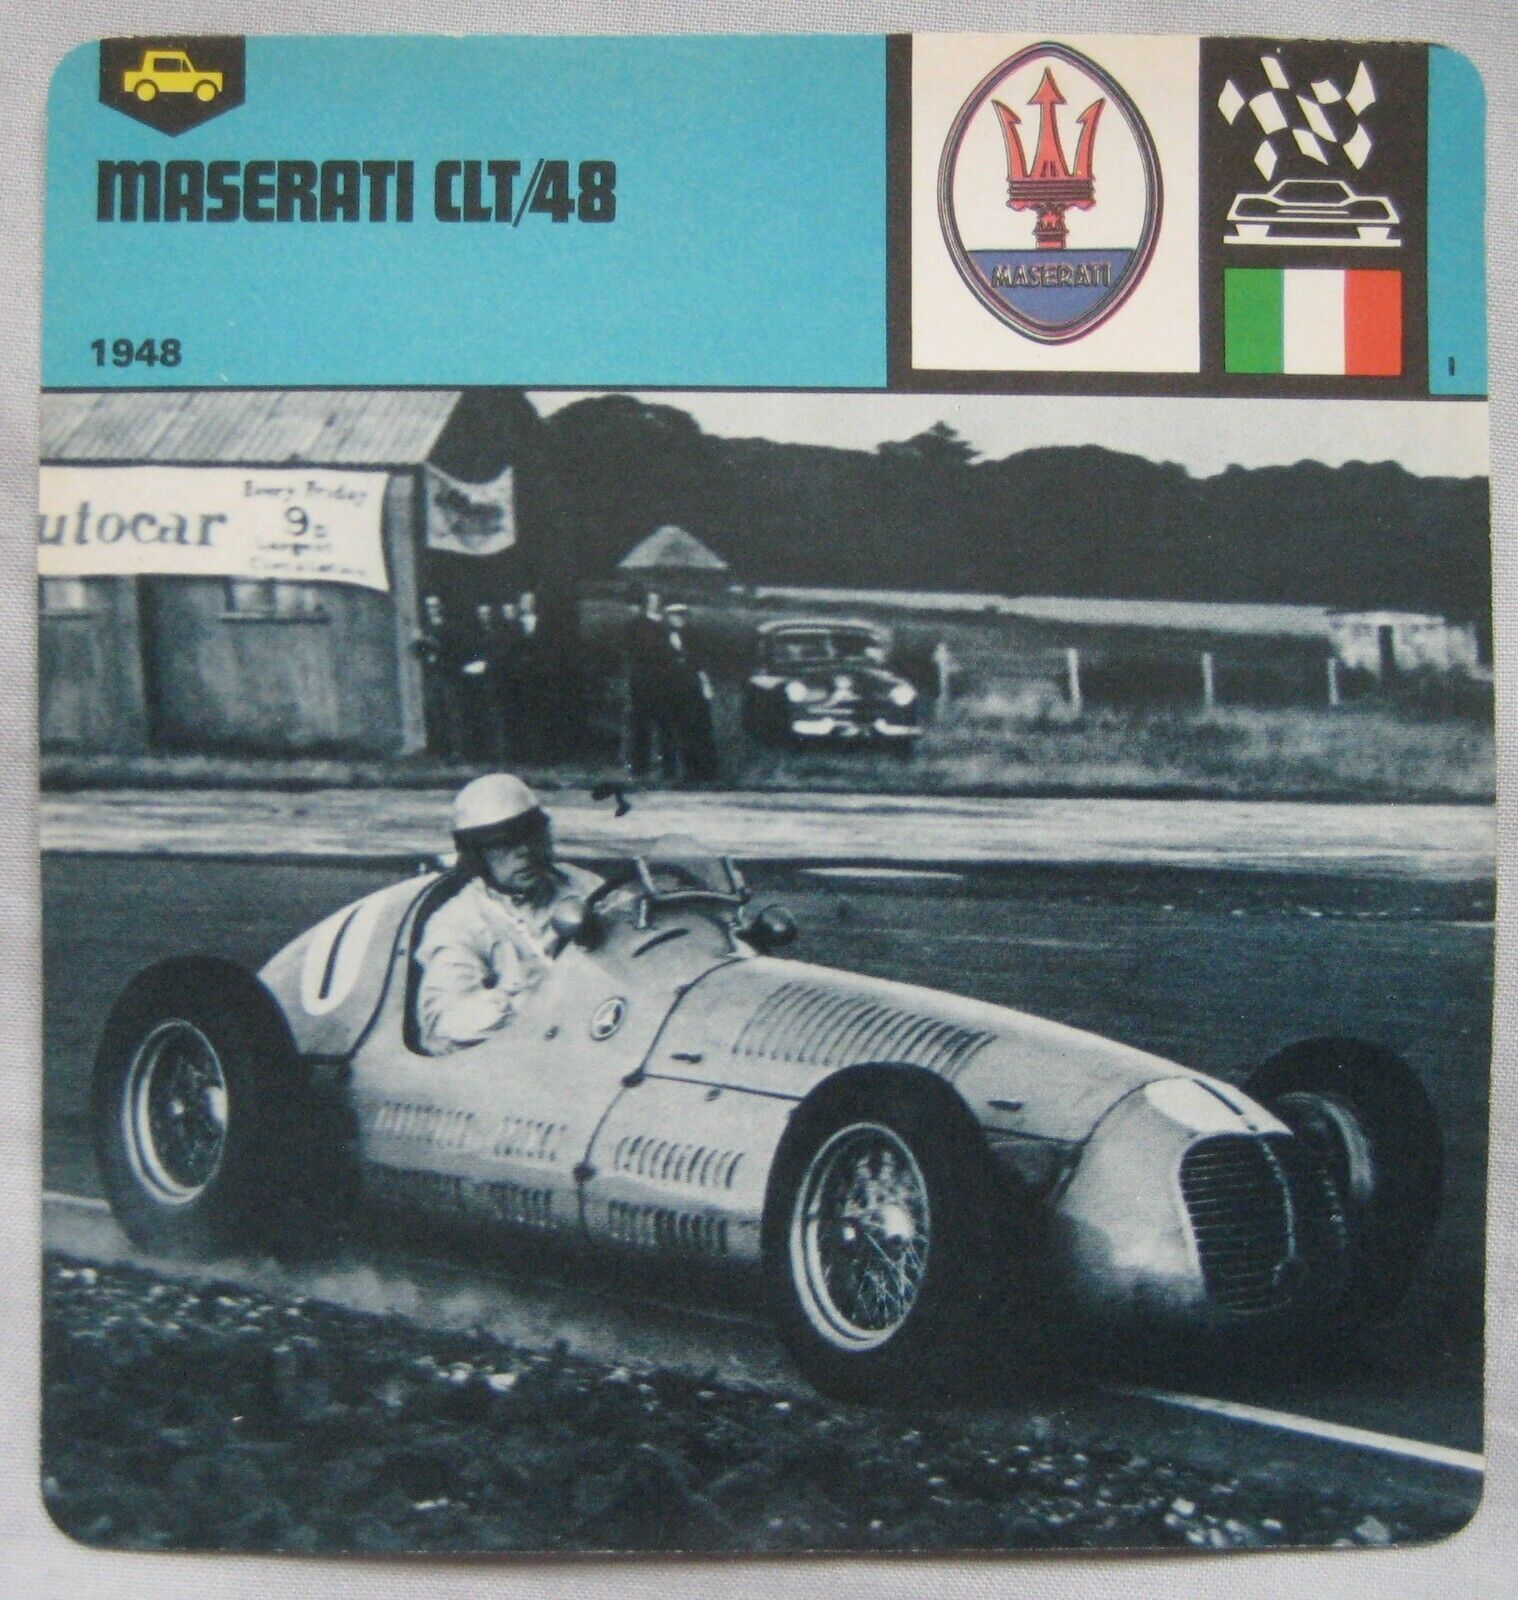 Maserati CLT/48 - Edito-Service Information Collectors Card